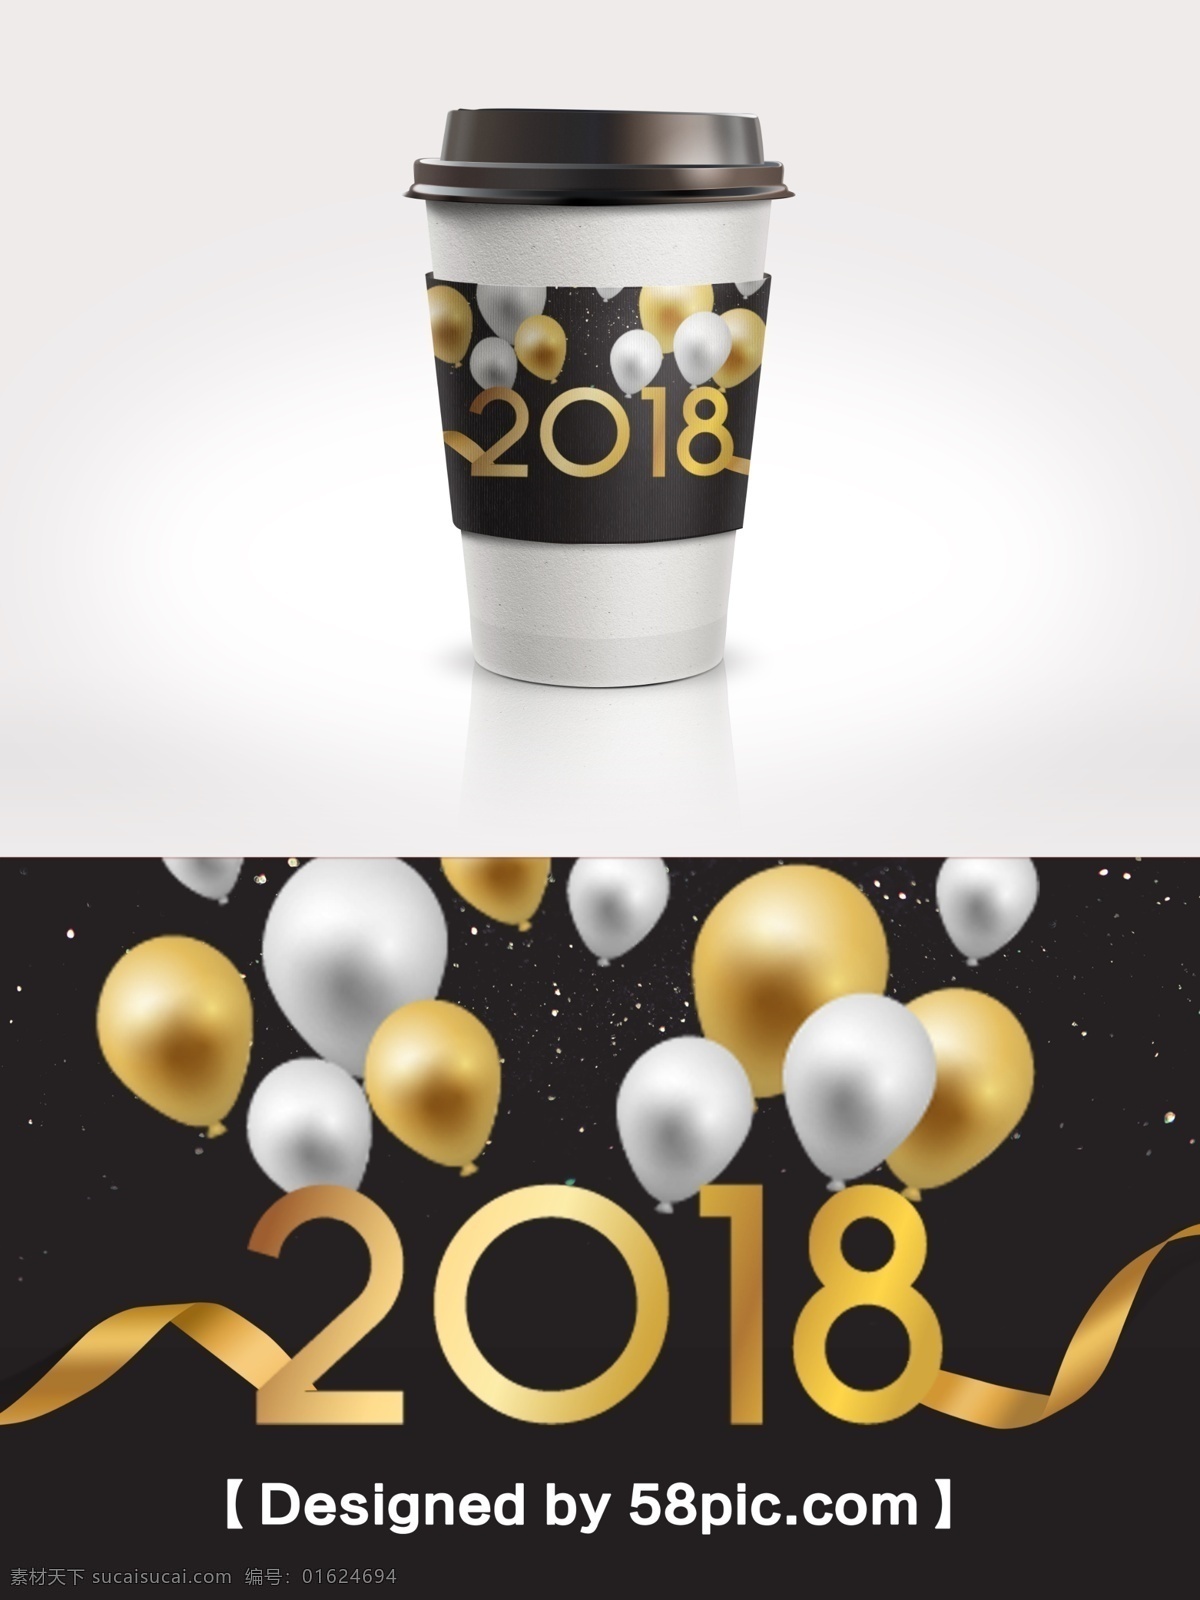 黑 金色 简约 大气 新春 2018 咖啡杯 套 psd素材 广告设计模版 黑金色 简约大气 节日包装设计 咖啡杯套设计 气球素材